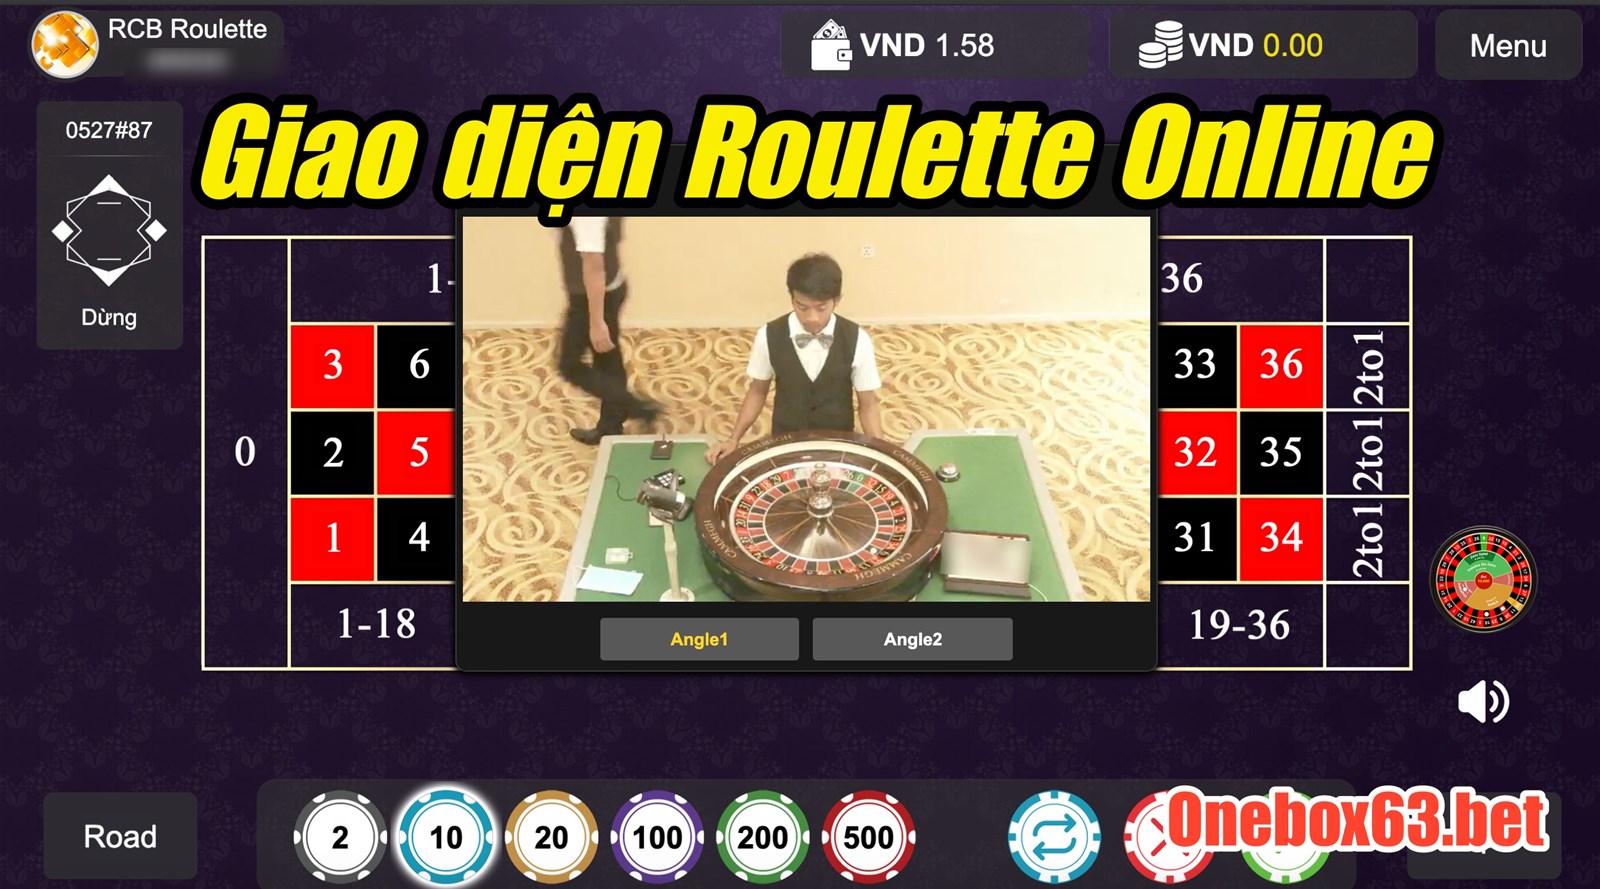  Giao diện chơi Roulette người quay thật tại sòng casino trực tuyến Onebox63